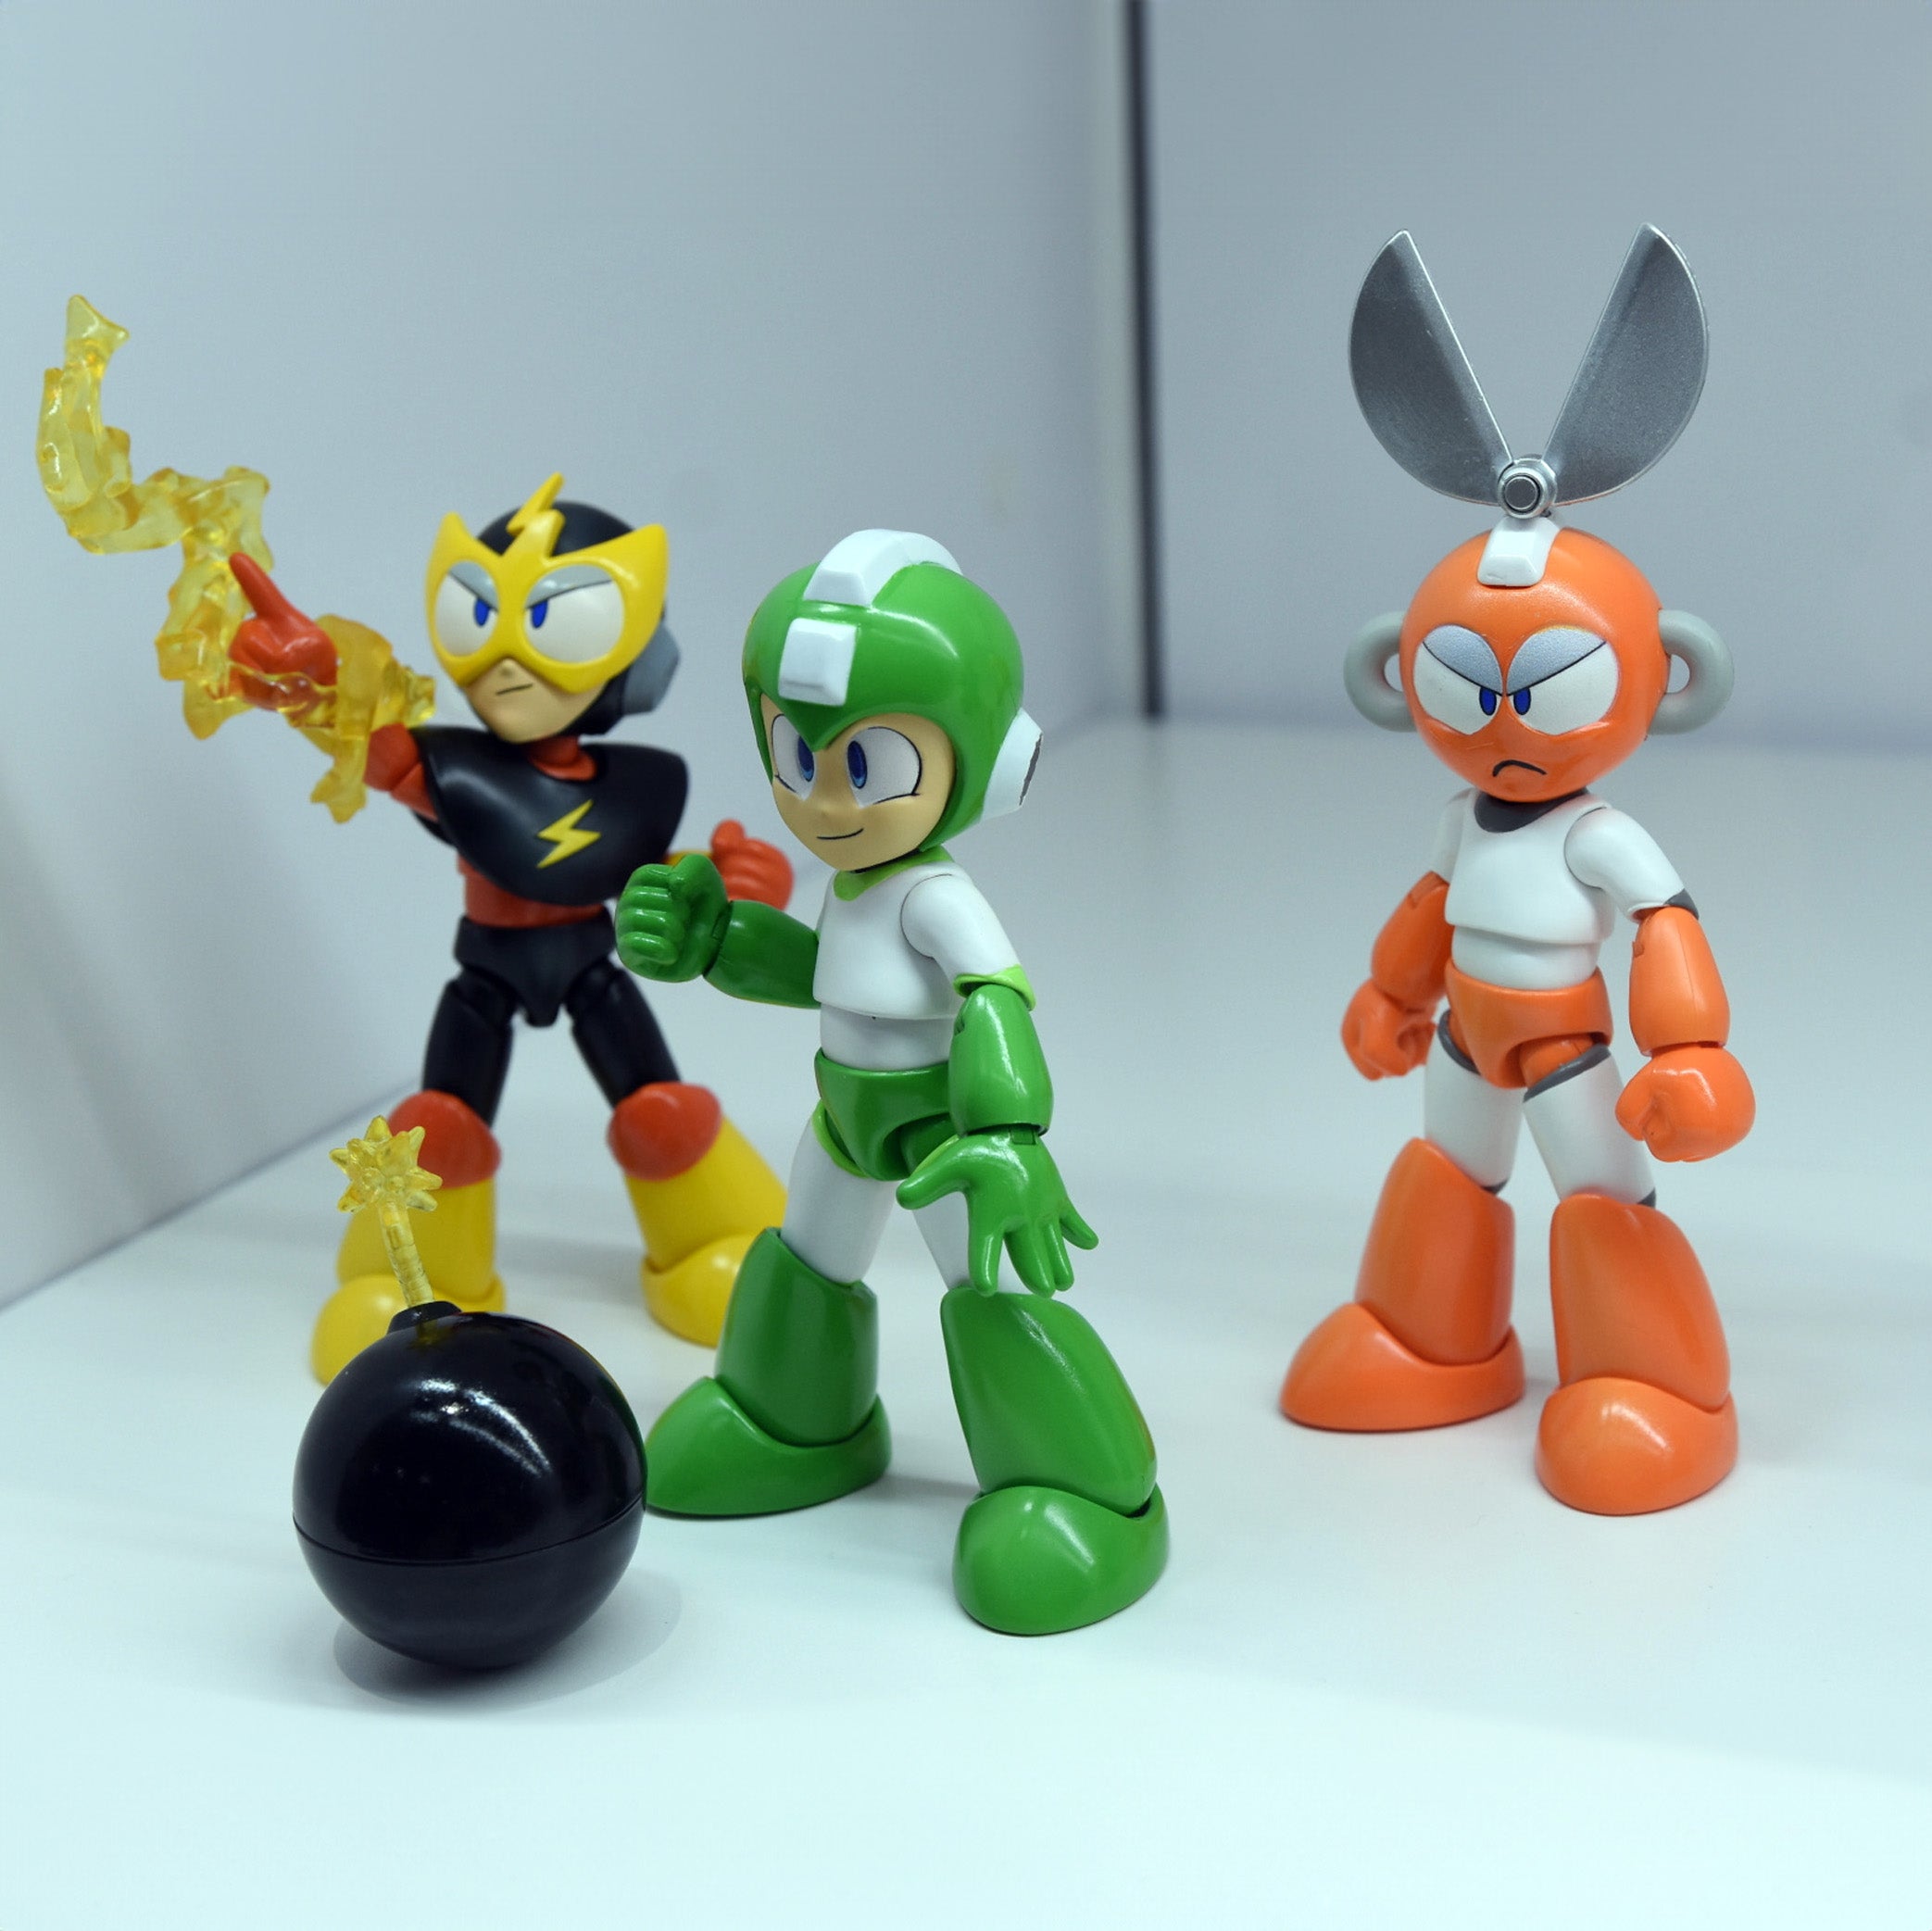 Jada Toys - Mega Man (Rockman) - Cut Man (4.5") - Marvelous Toys